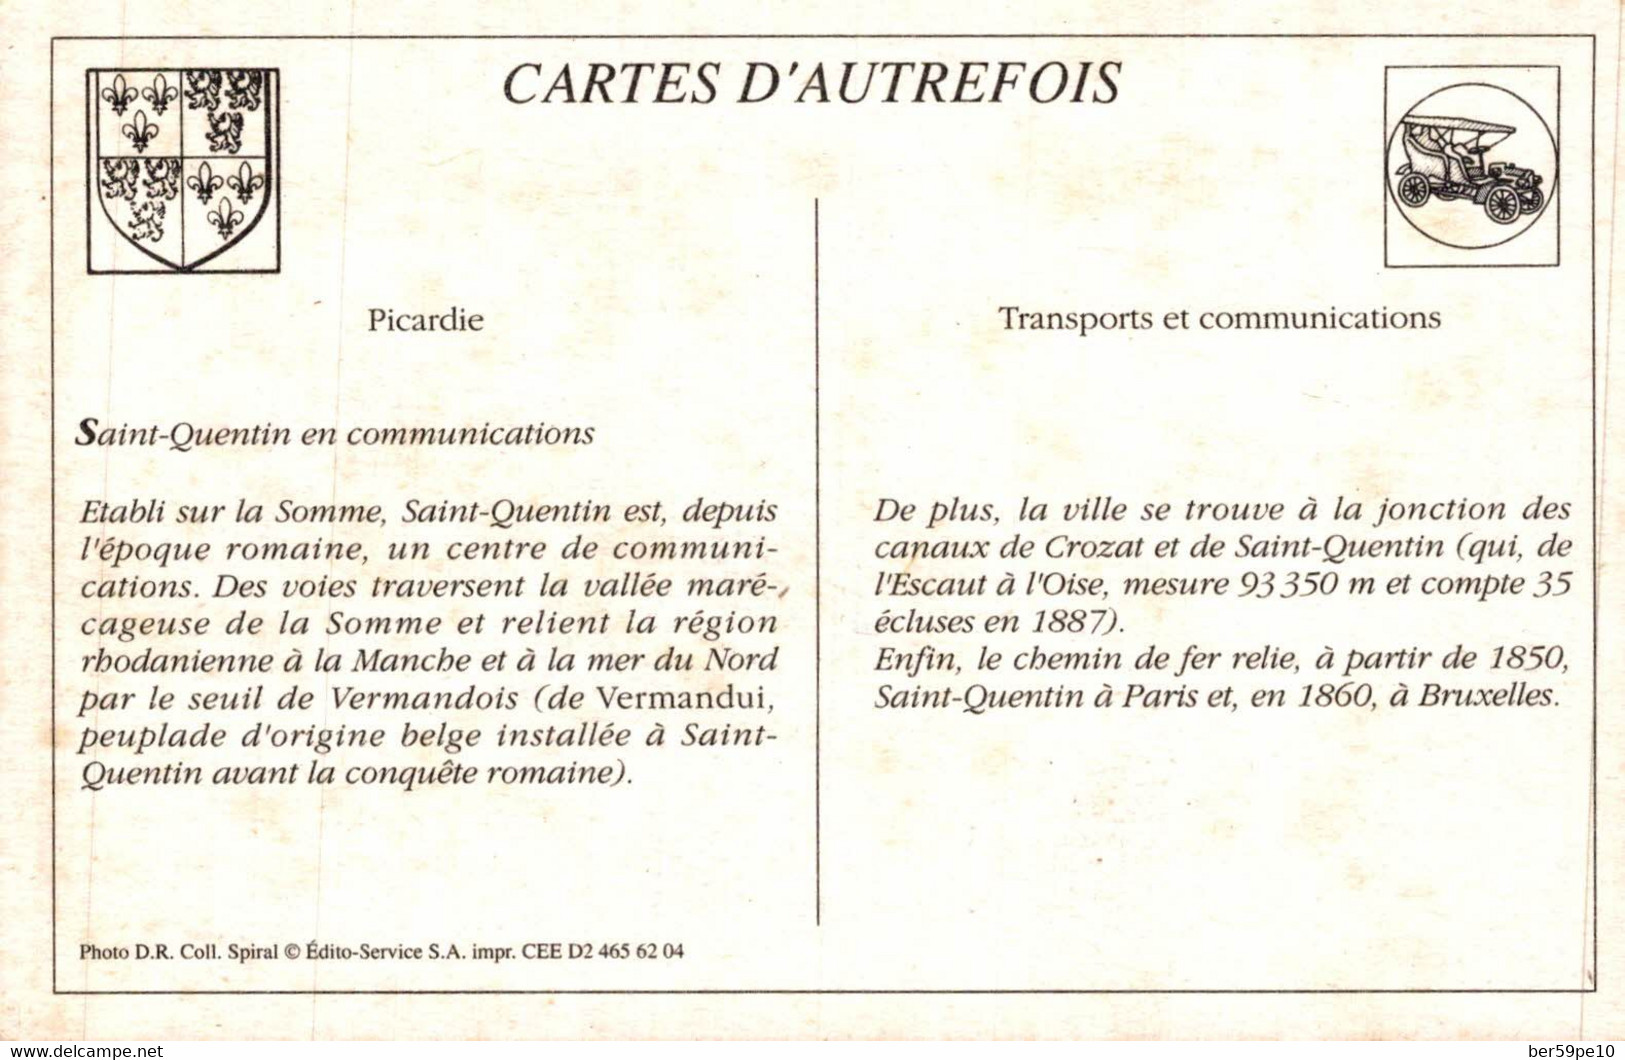 CARTE D'AUTREFOIS  TRANSPORTS ET COMMUNICATIONS  - PICARDIE  SAINT-QUENTIN EN COMMUNICATIONS - Picardie